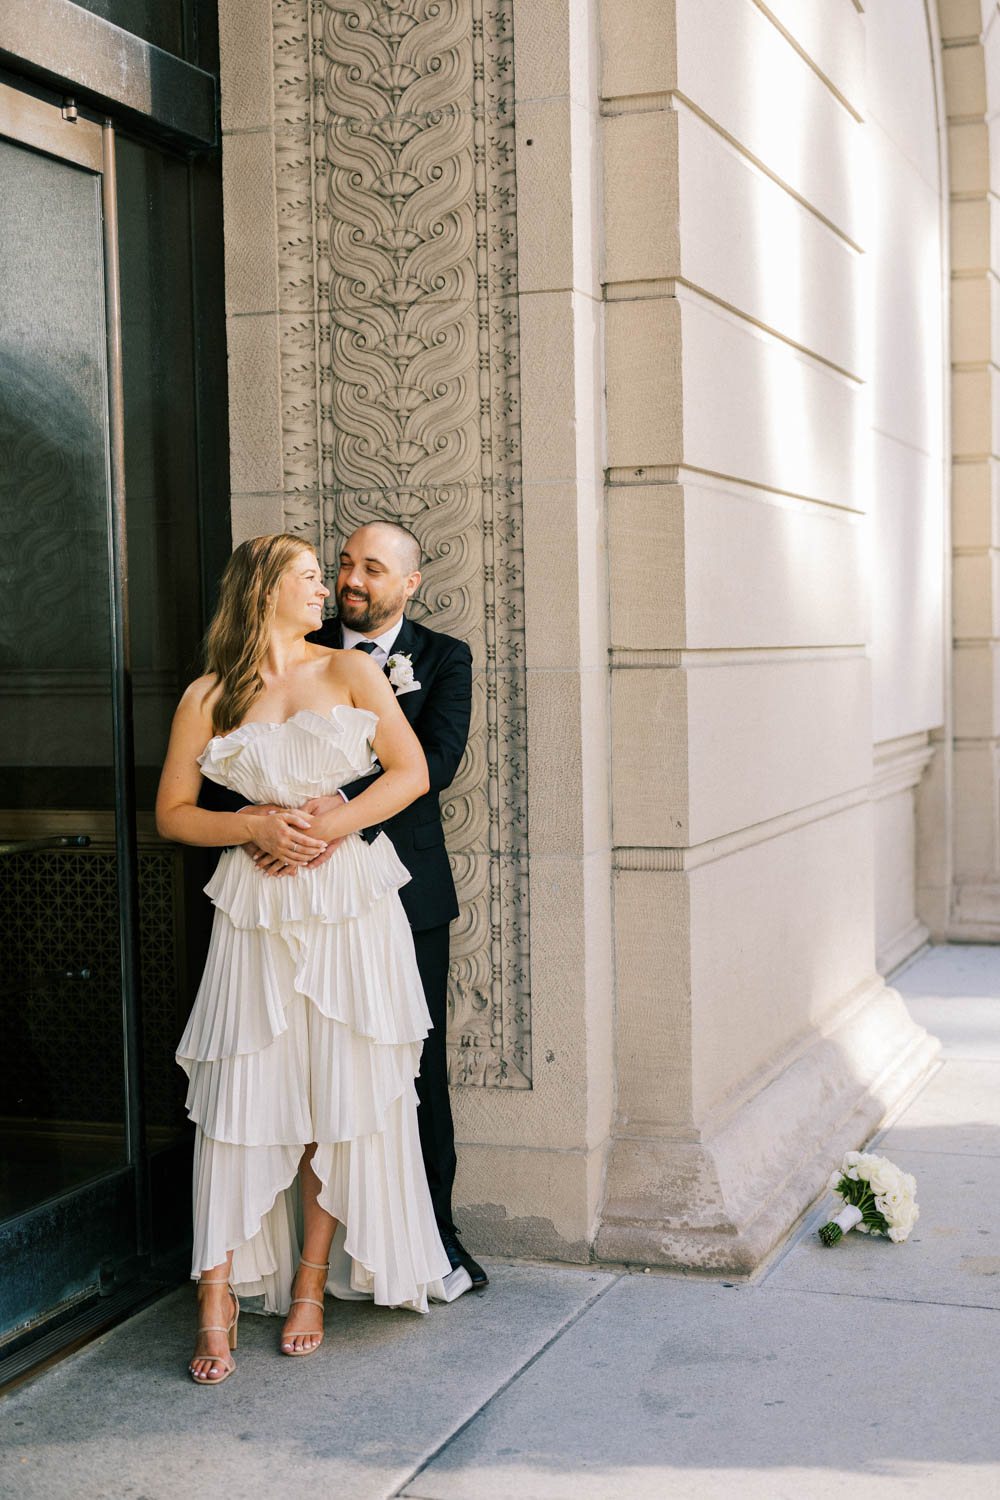 Art Institute of Chicago wedding photo